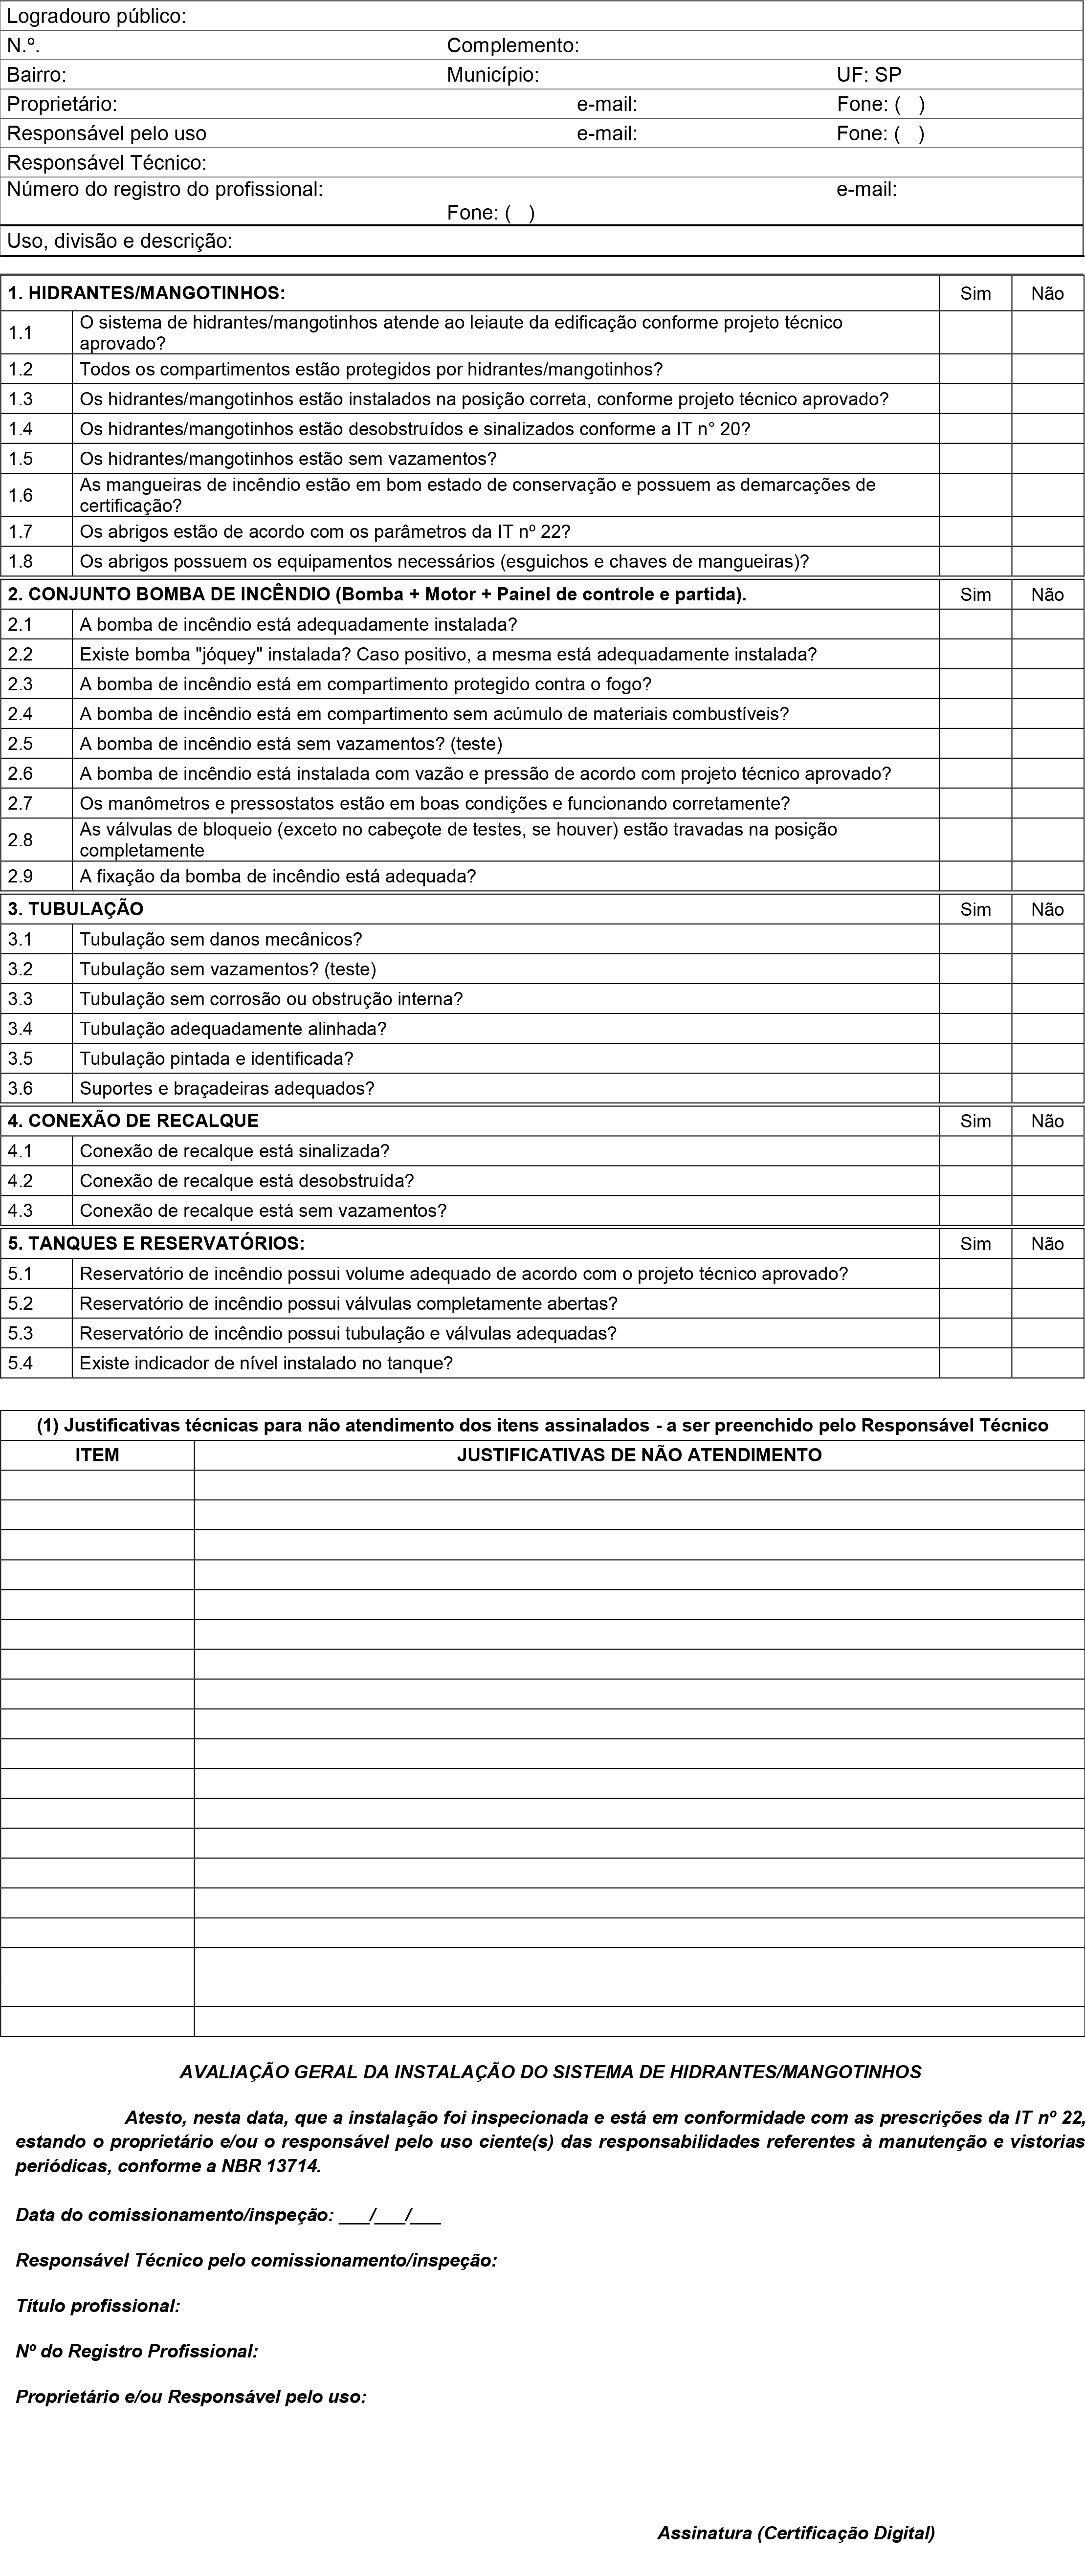 Anexo O: Relatório de comissionamento e de inspeção periódica do sistema de hidrantes e mangotinhos